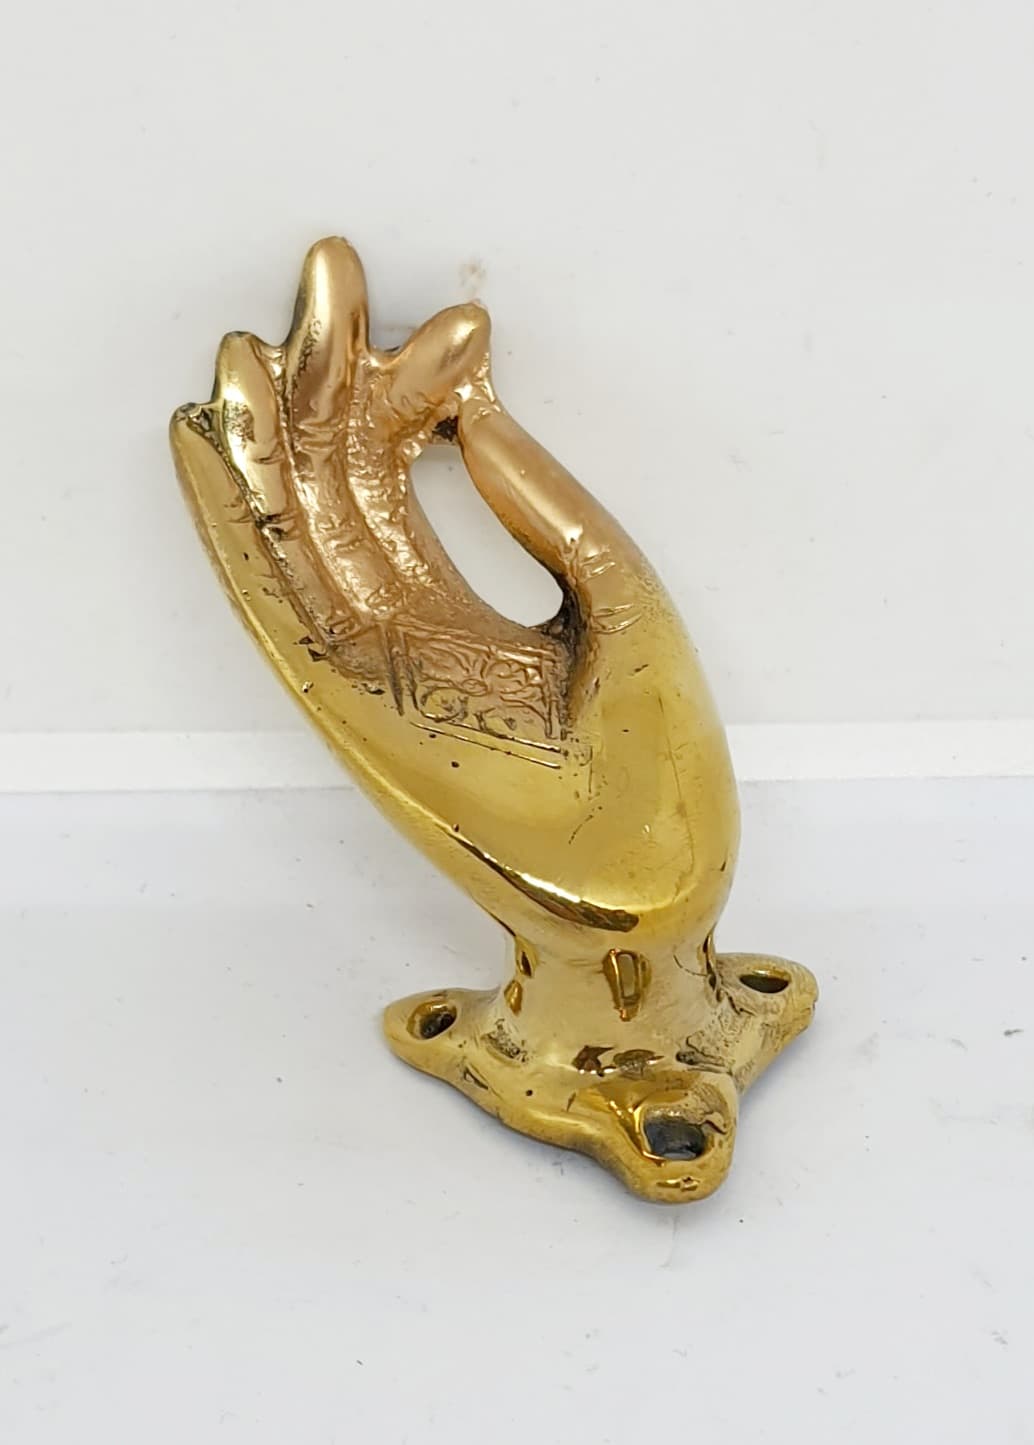 รูปภาพที่1 ของสินค้า : H054-1 มือจิ๋ว ทองเหลือง[S] สูง 3.3 นิ้ว 